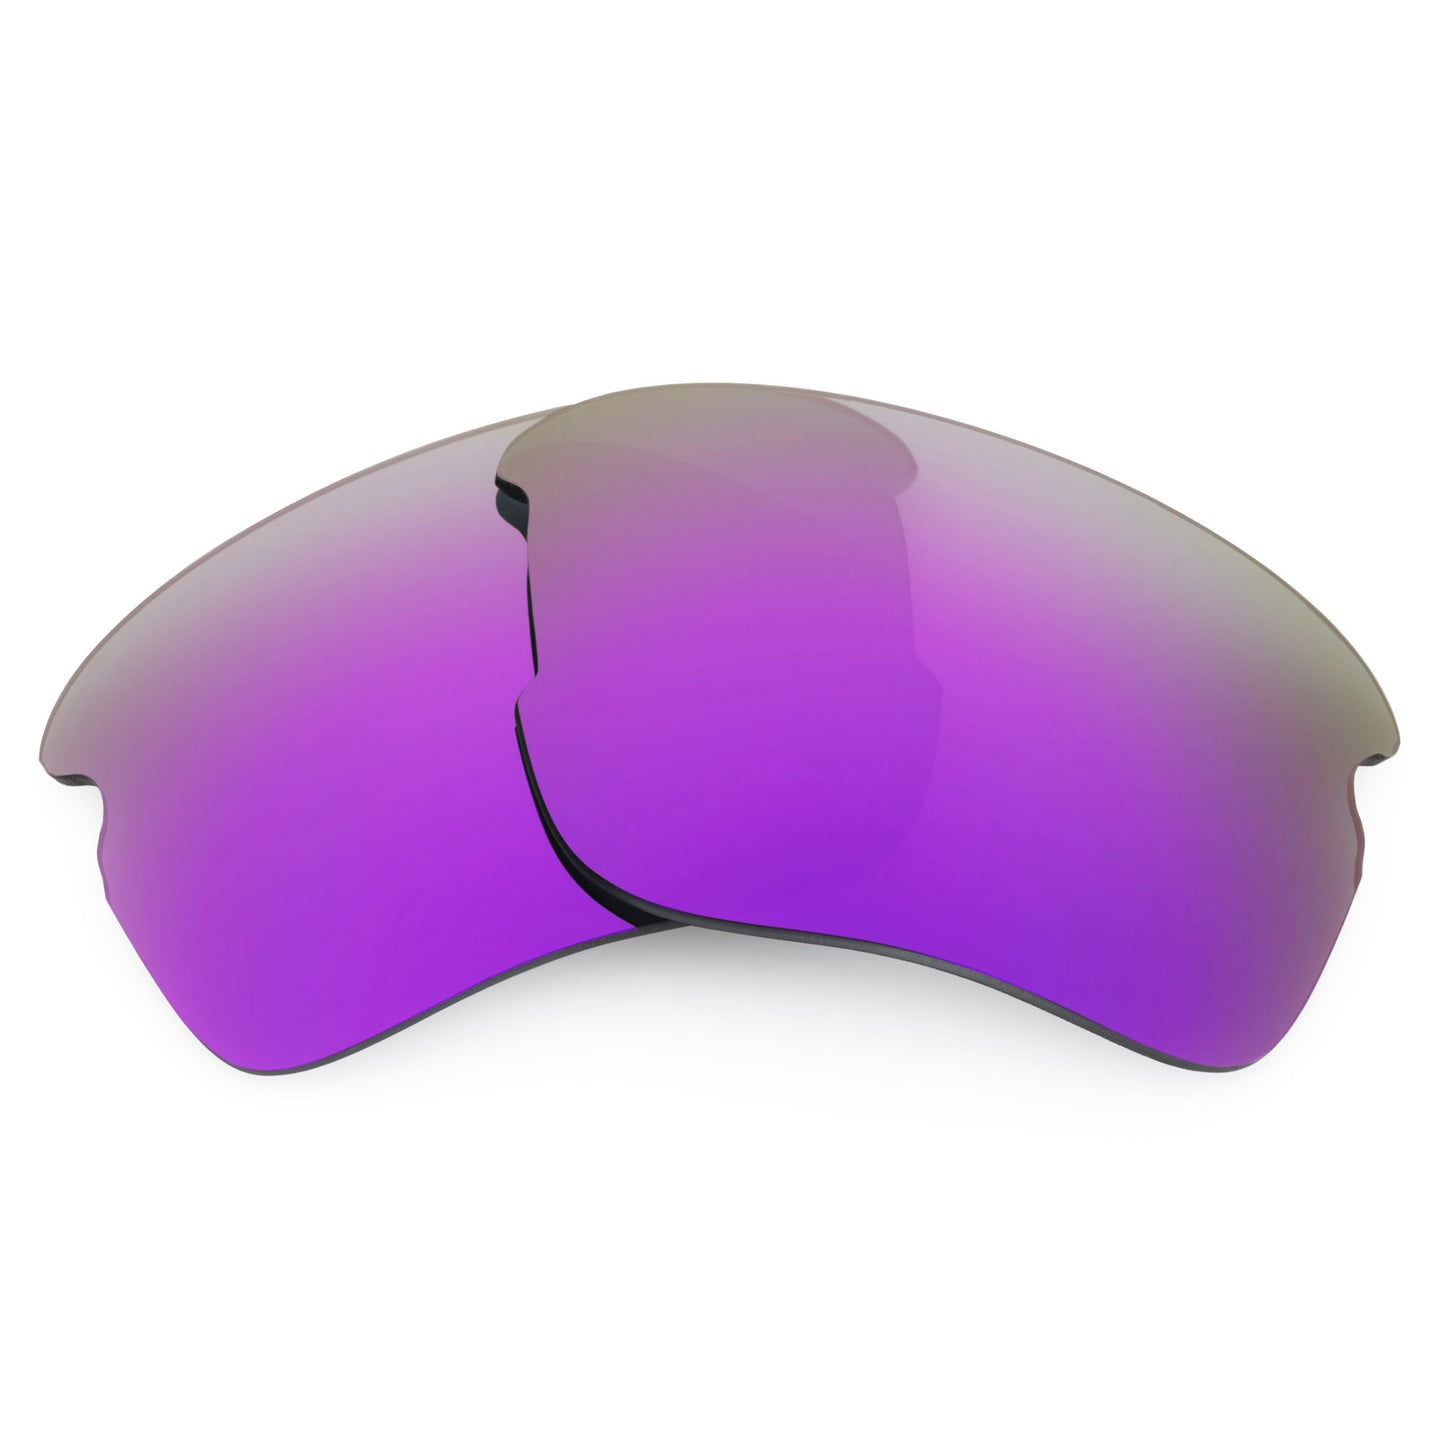 Revant replacement lenses for Oakley Flak XS (Exclusive Shape) Non-Polarized Plasma Purple